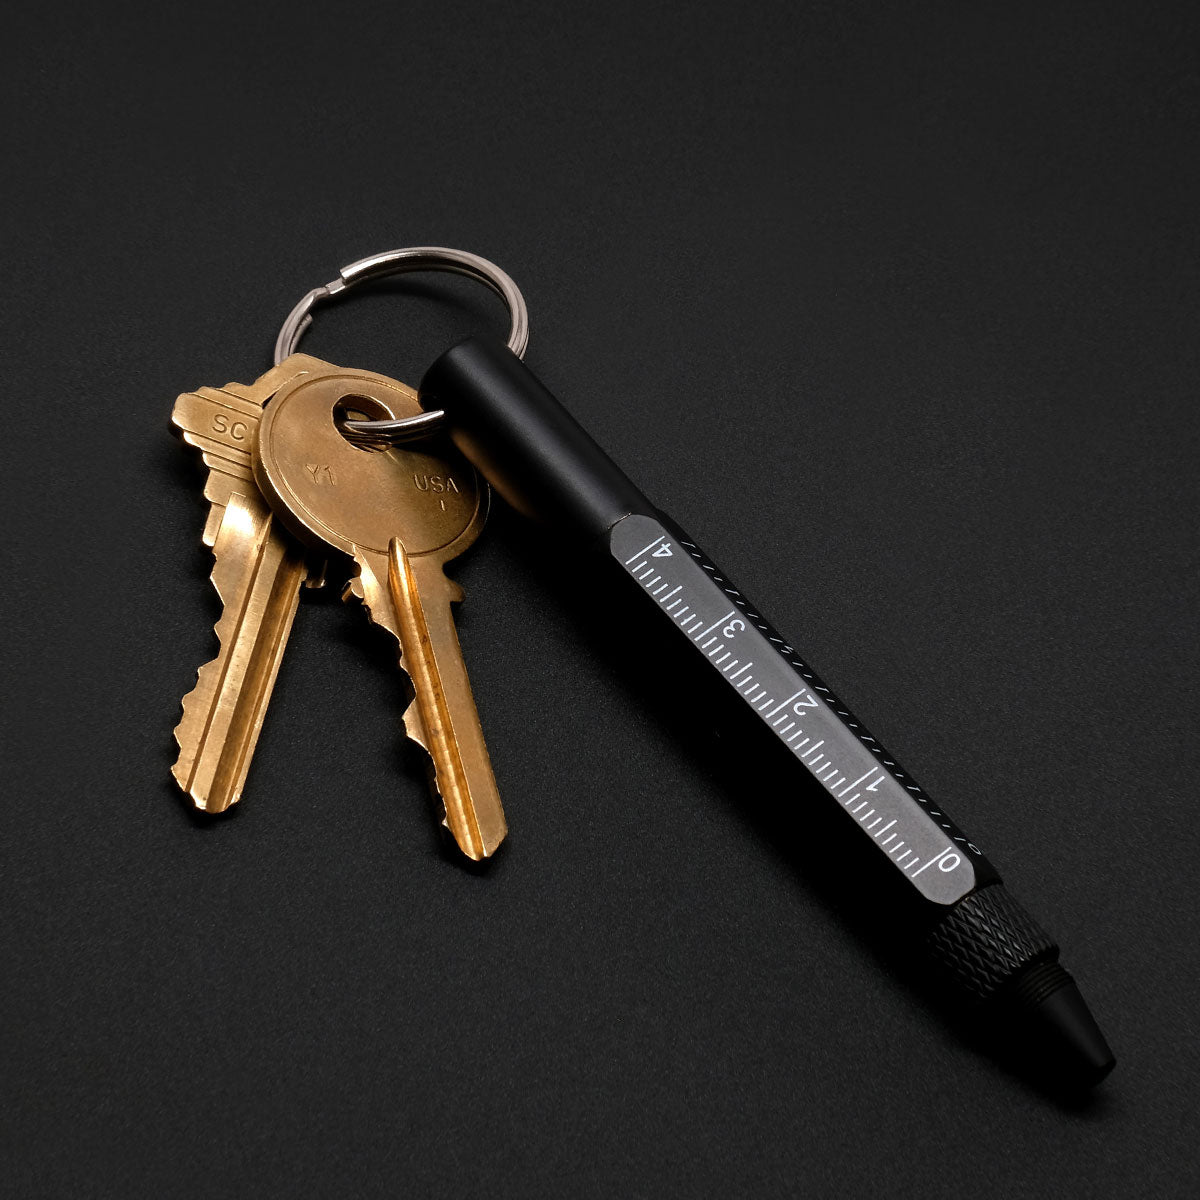 Multitool Pen 5-in-1 Keychain